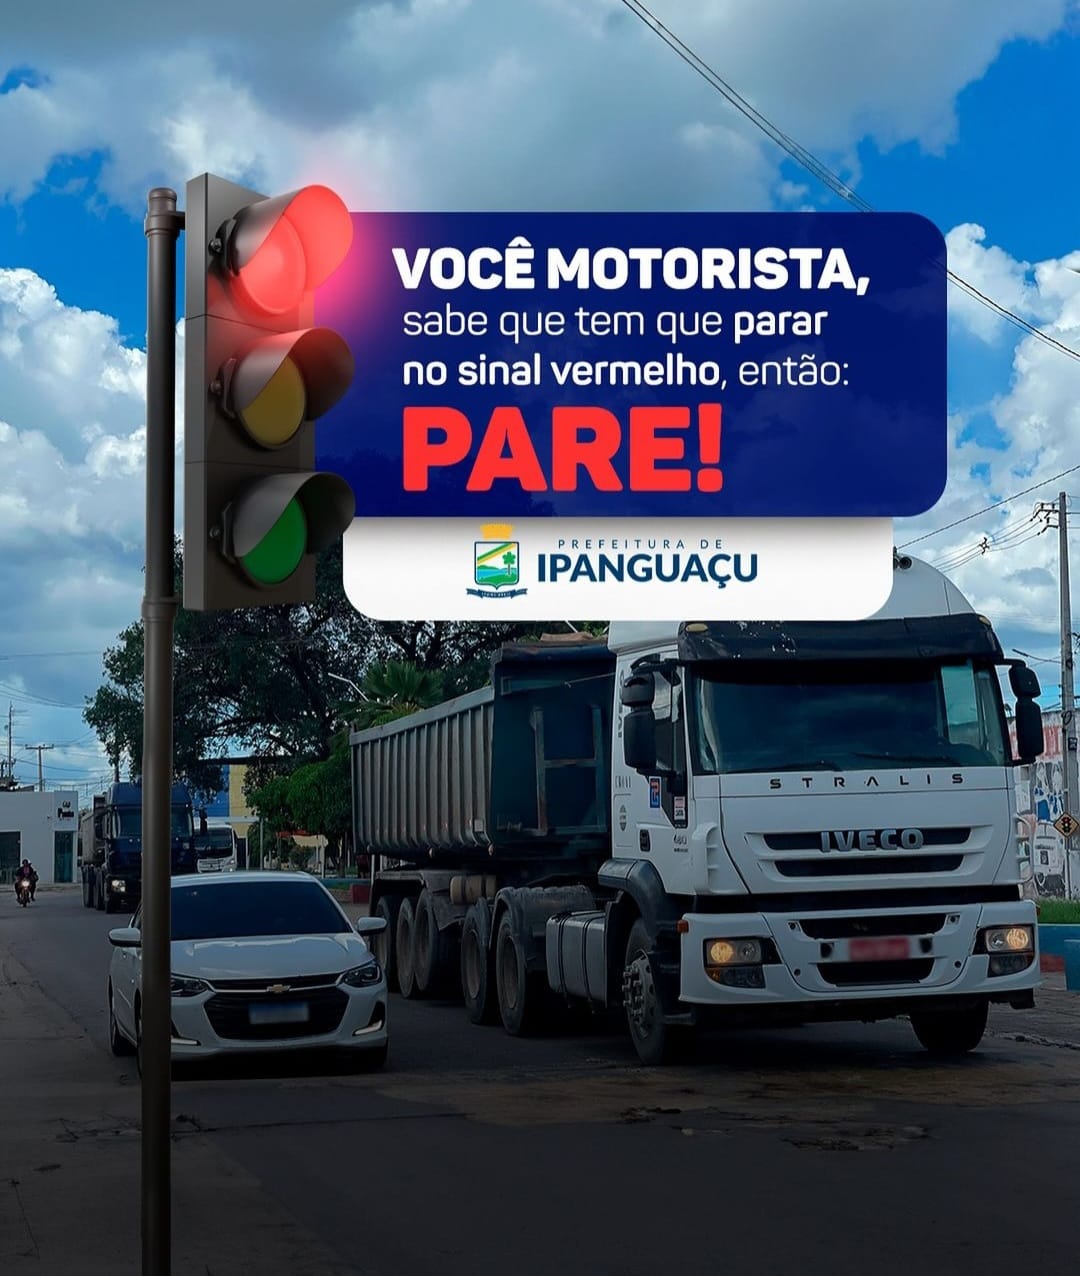 Prefeitura de Ipanguaçu reforça a importância do cuidado no trânsito após o rompimento na BR-304